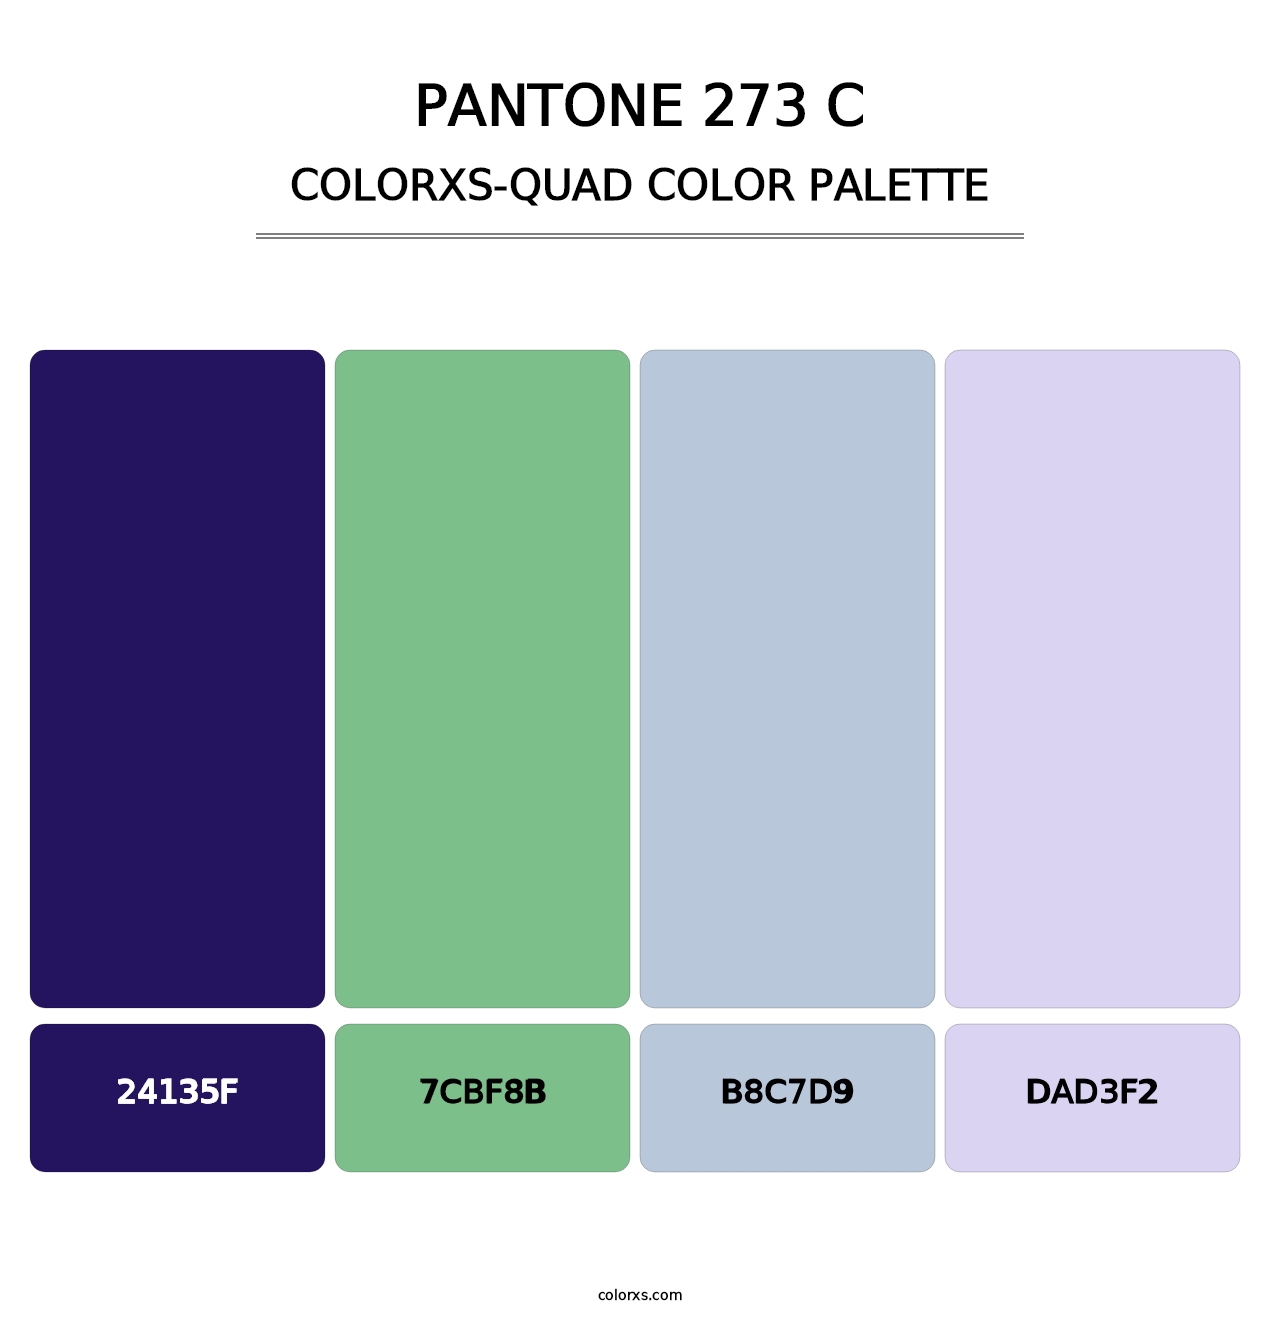 PANTONE 273 C - Colorxs Quad Palette